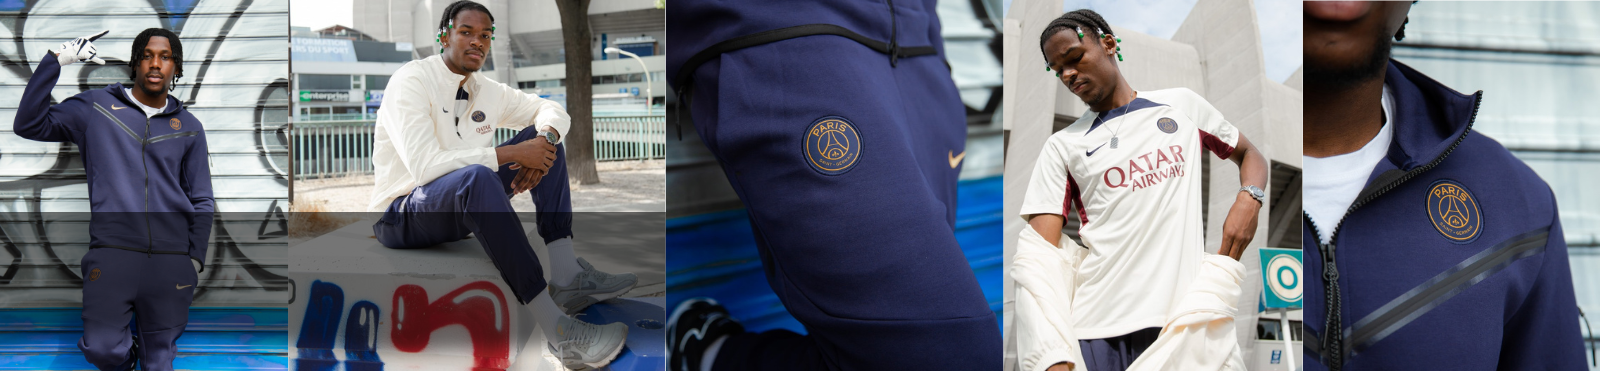 Survêtements Homme  Psg Veste zippée PSG - Collection officielle